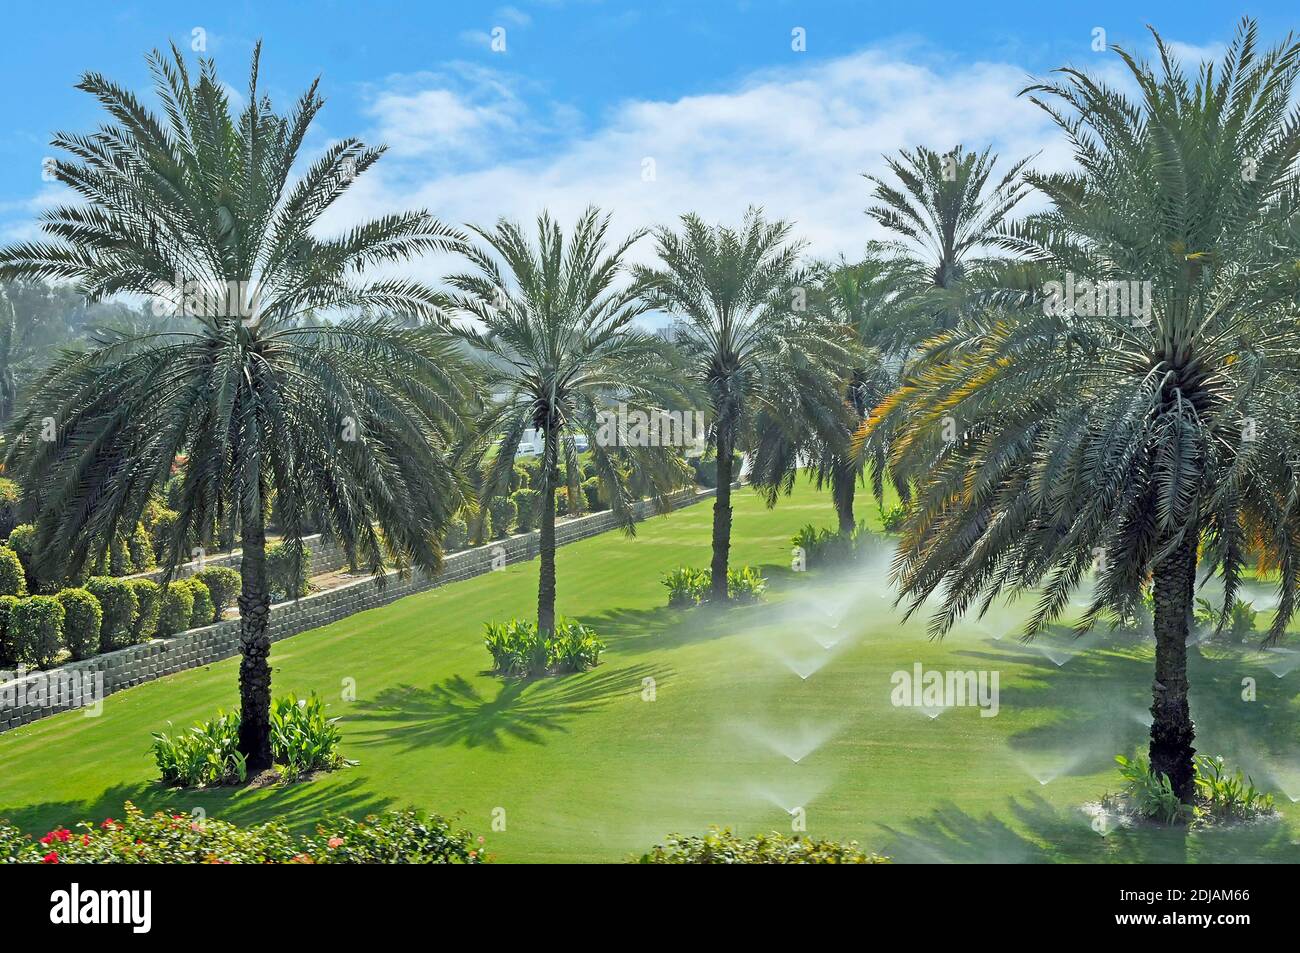 Irrigatori d'acqua a Dubai file di palme in giardino irrorando e irrigando grandi prati verdi verdi e caldi caldi Emirati Arabi Uniti Foto Stock